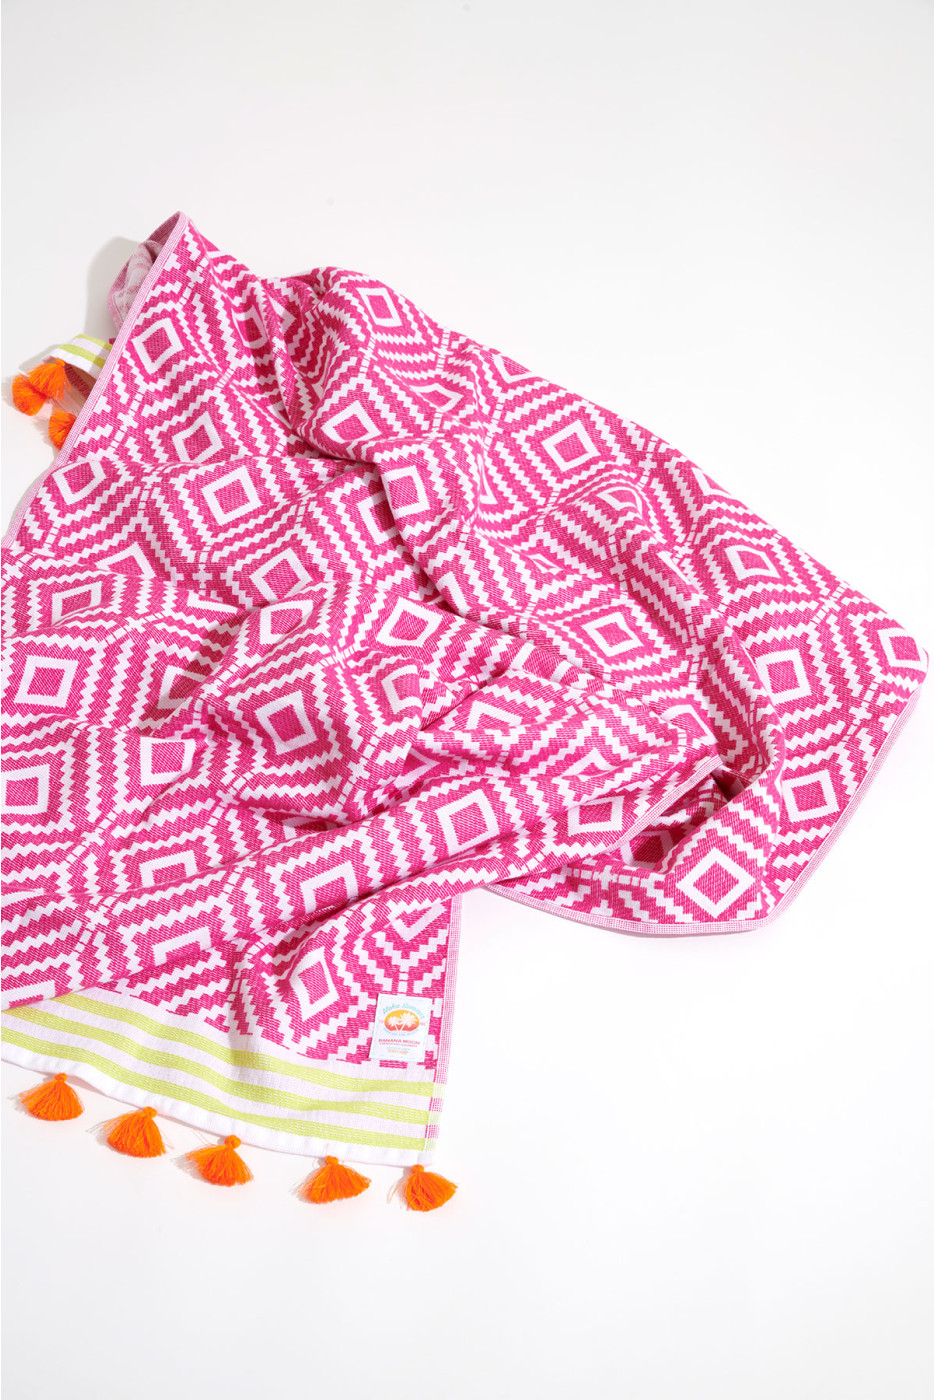 NANCY MARBELLA pink beach towel